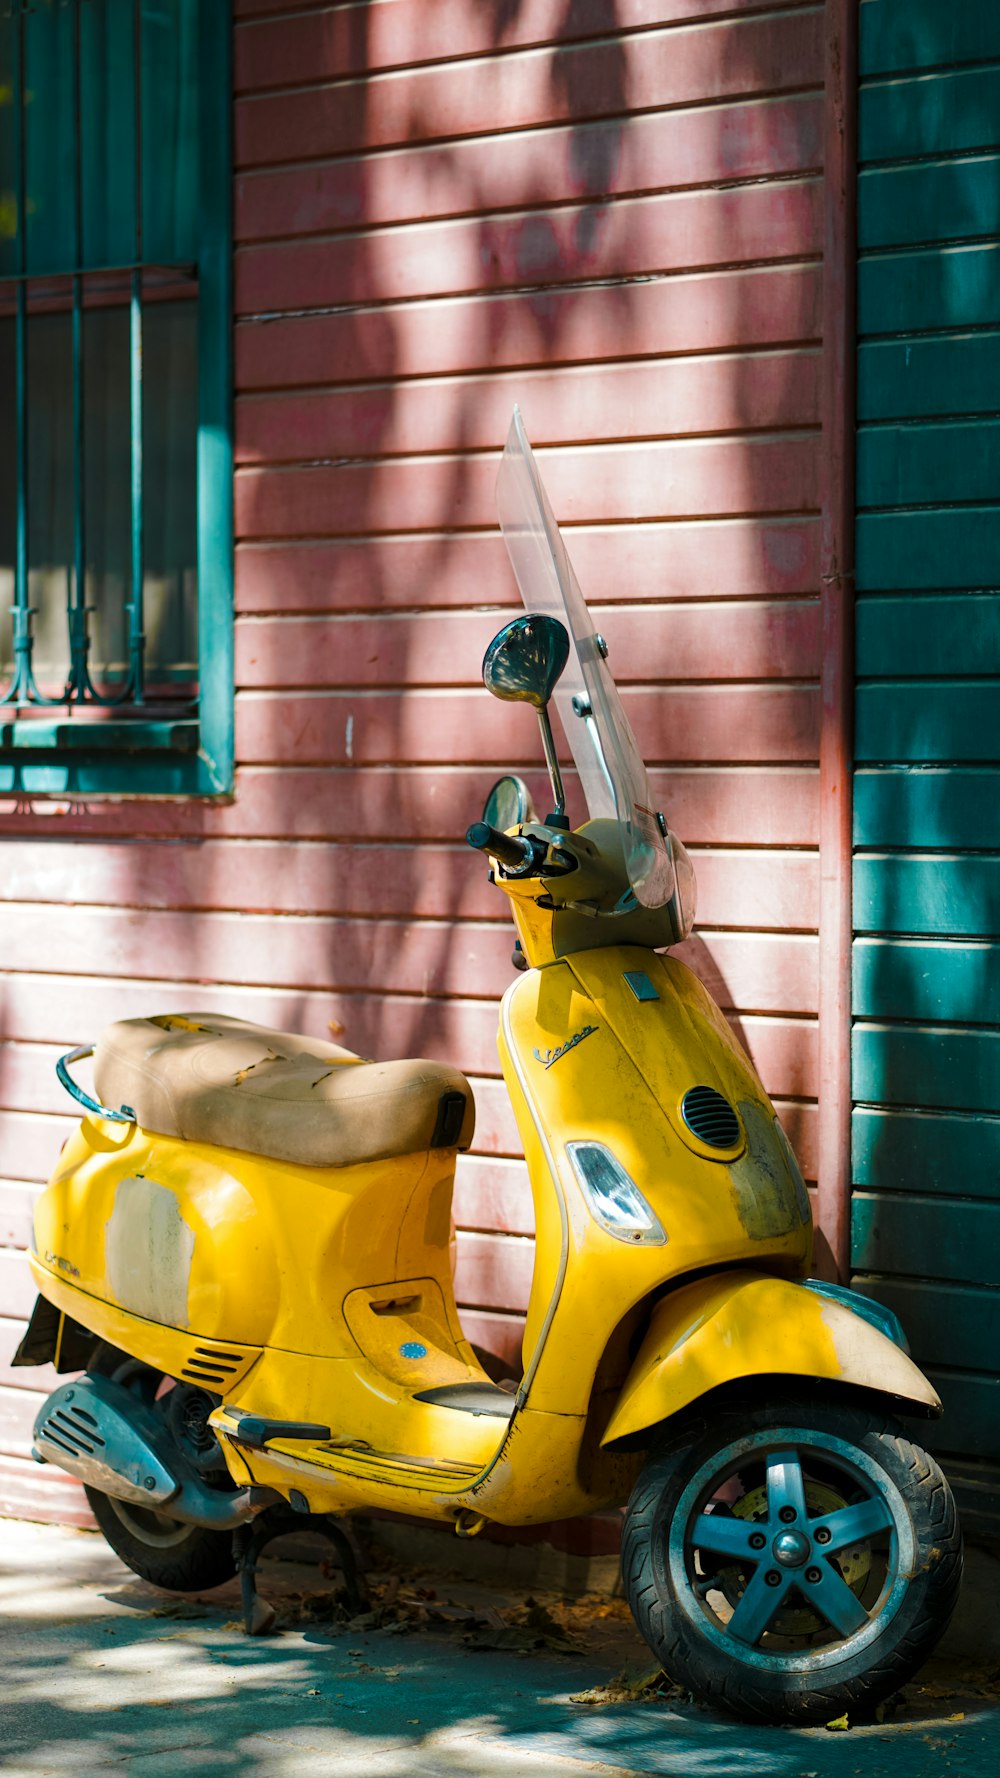 uma scooter amarela estacionada em frente a um edifício